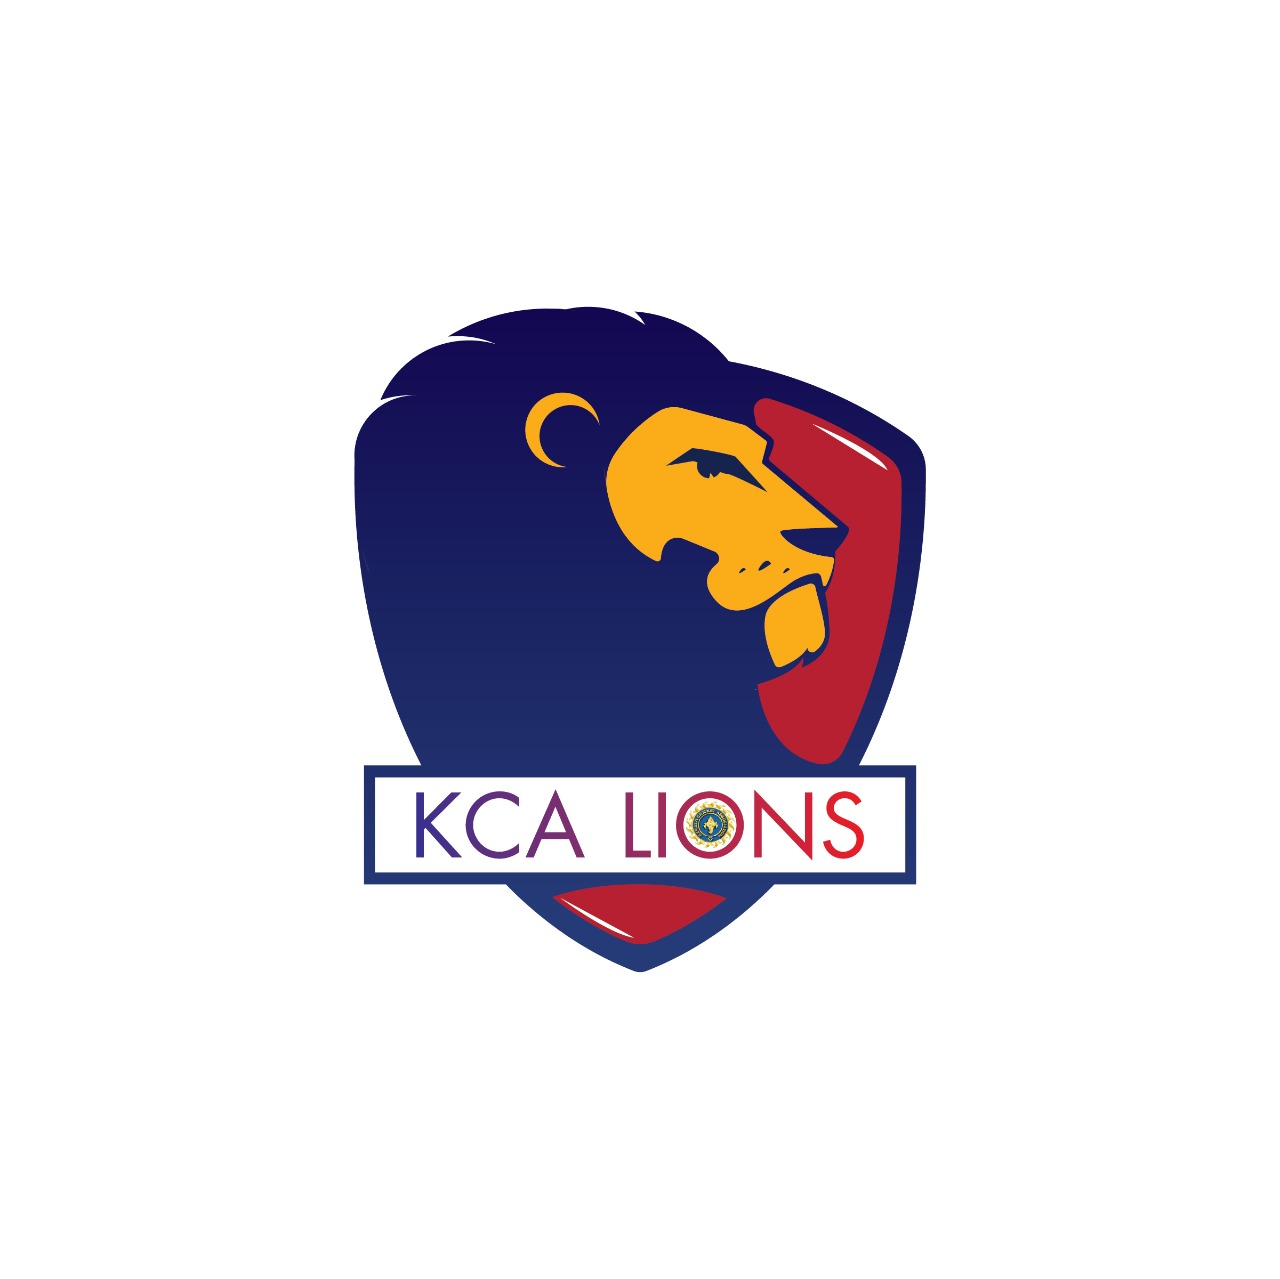 KCA Lions